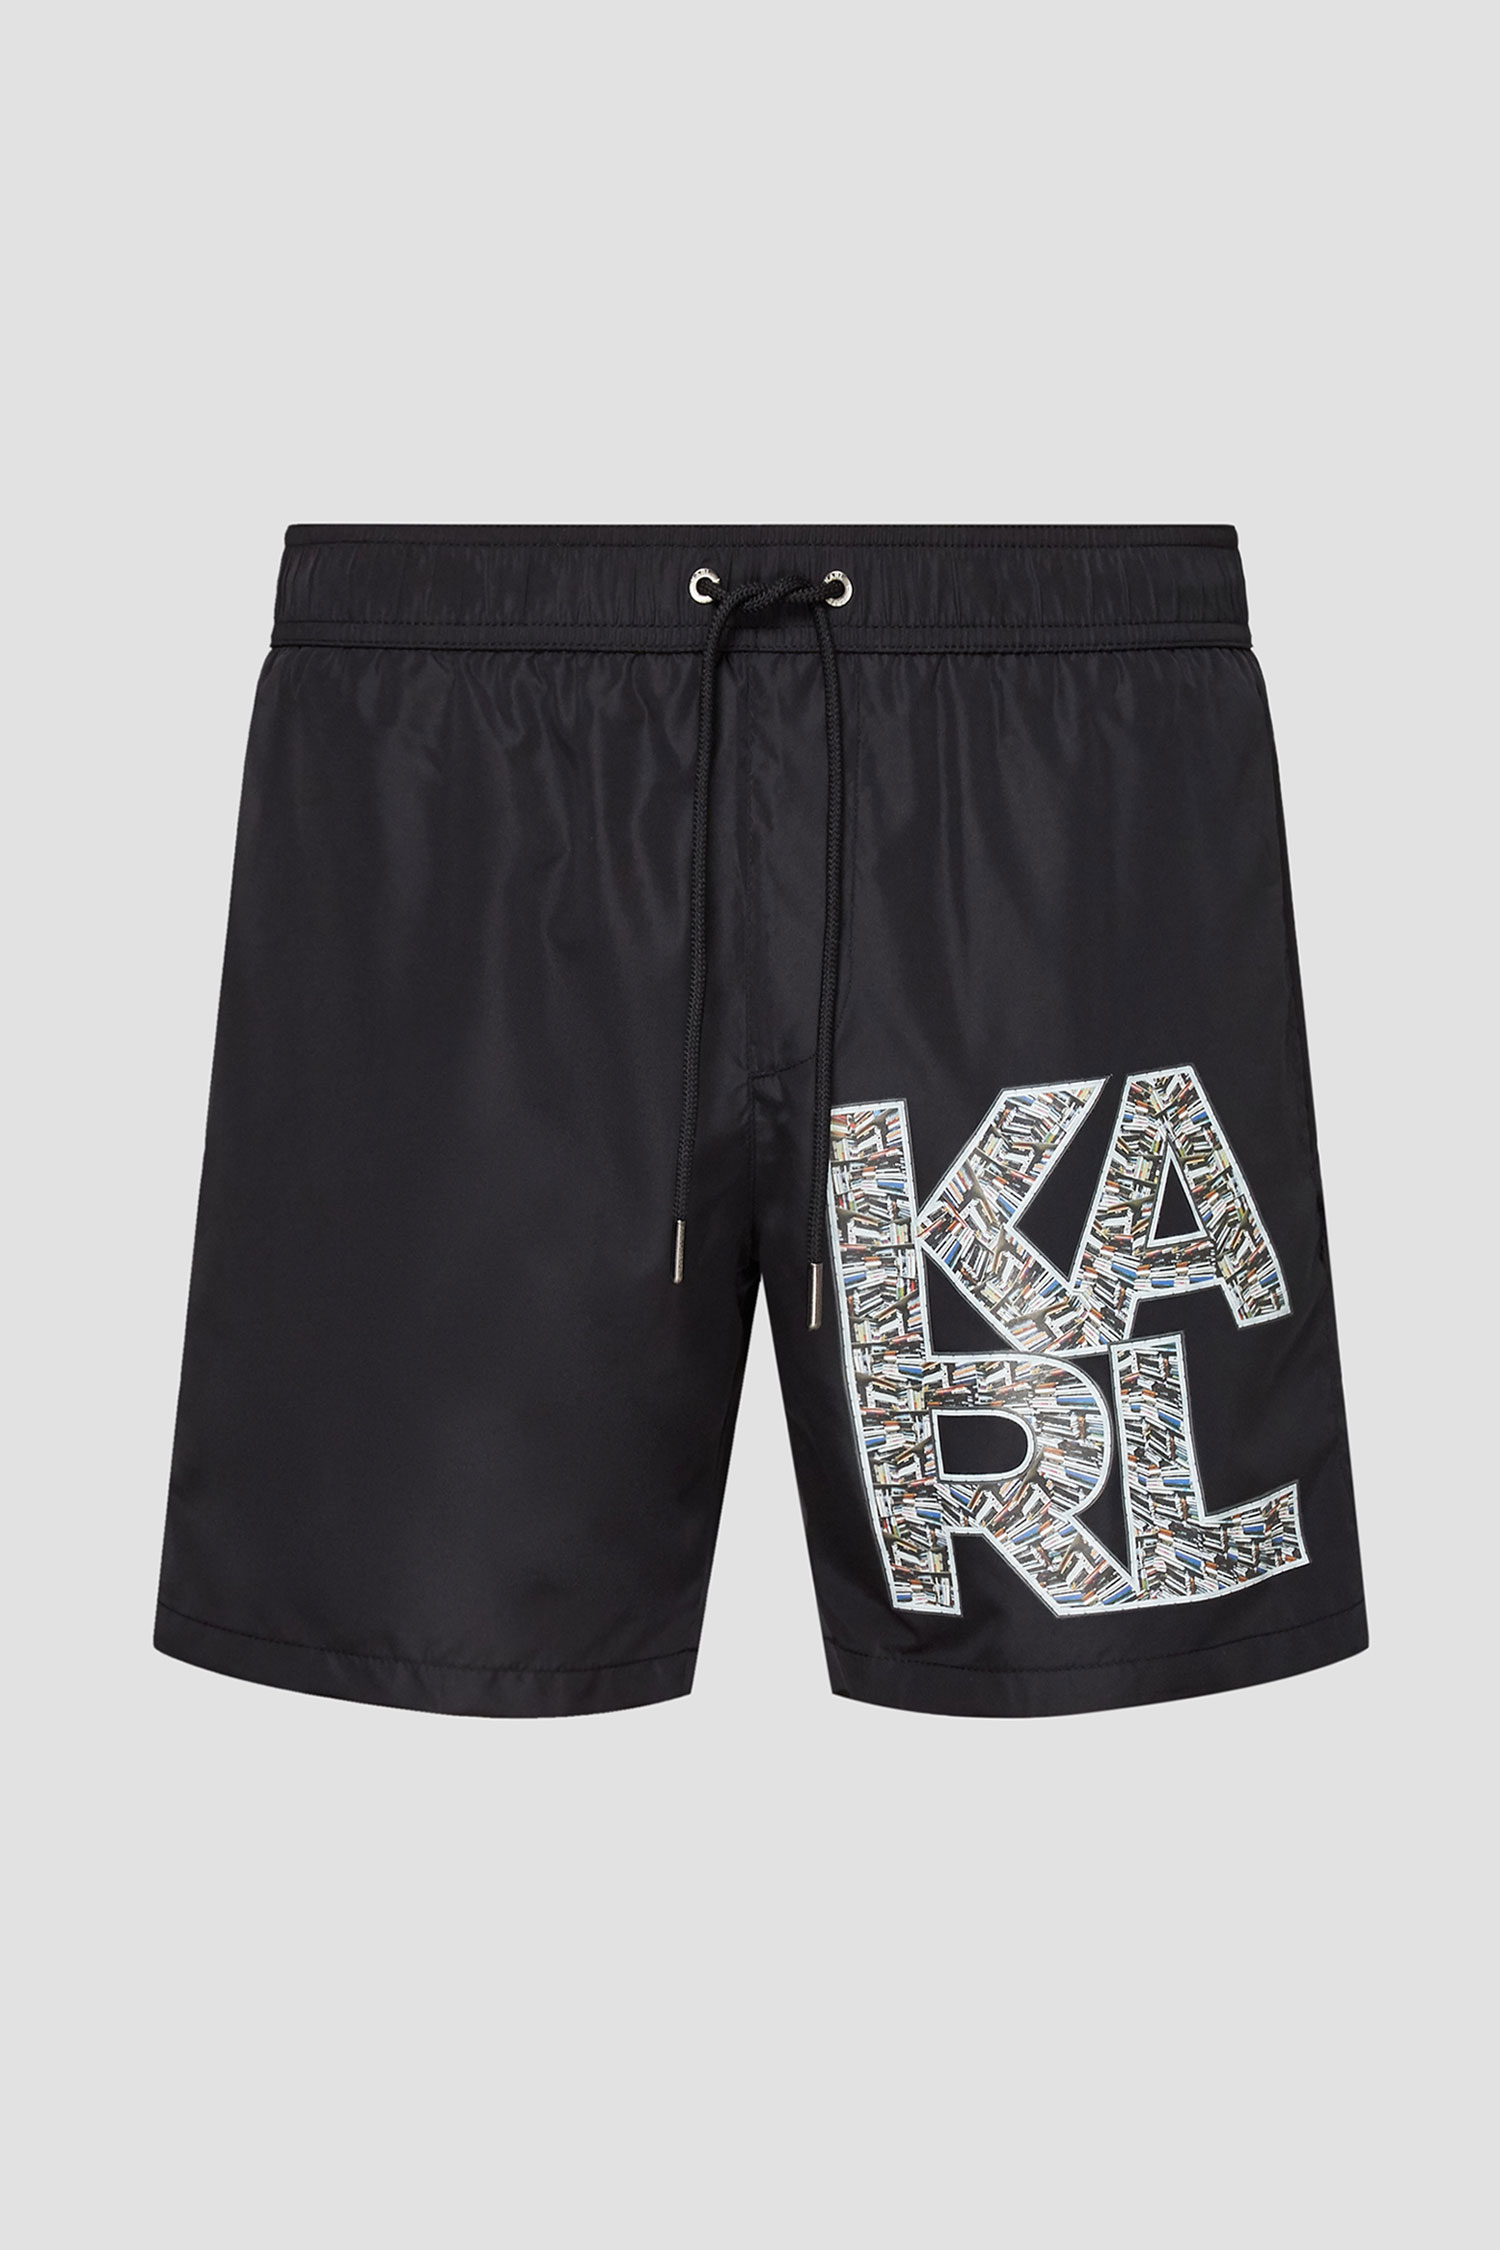 Чорні плавальні шорти для хлопців Karl Lagerfeld KL21MBM02;ONE COLOUR